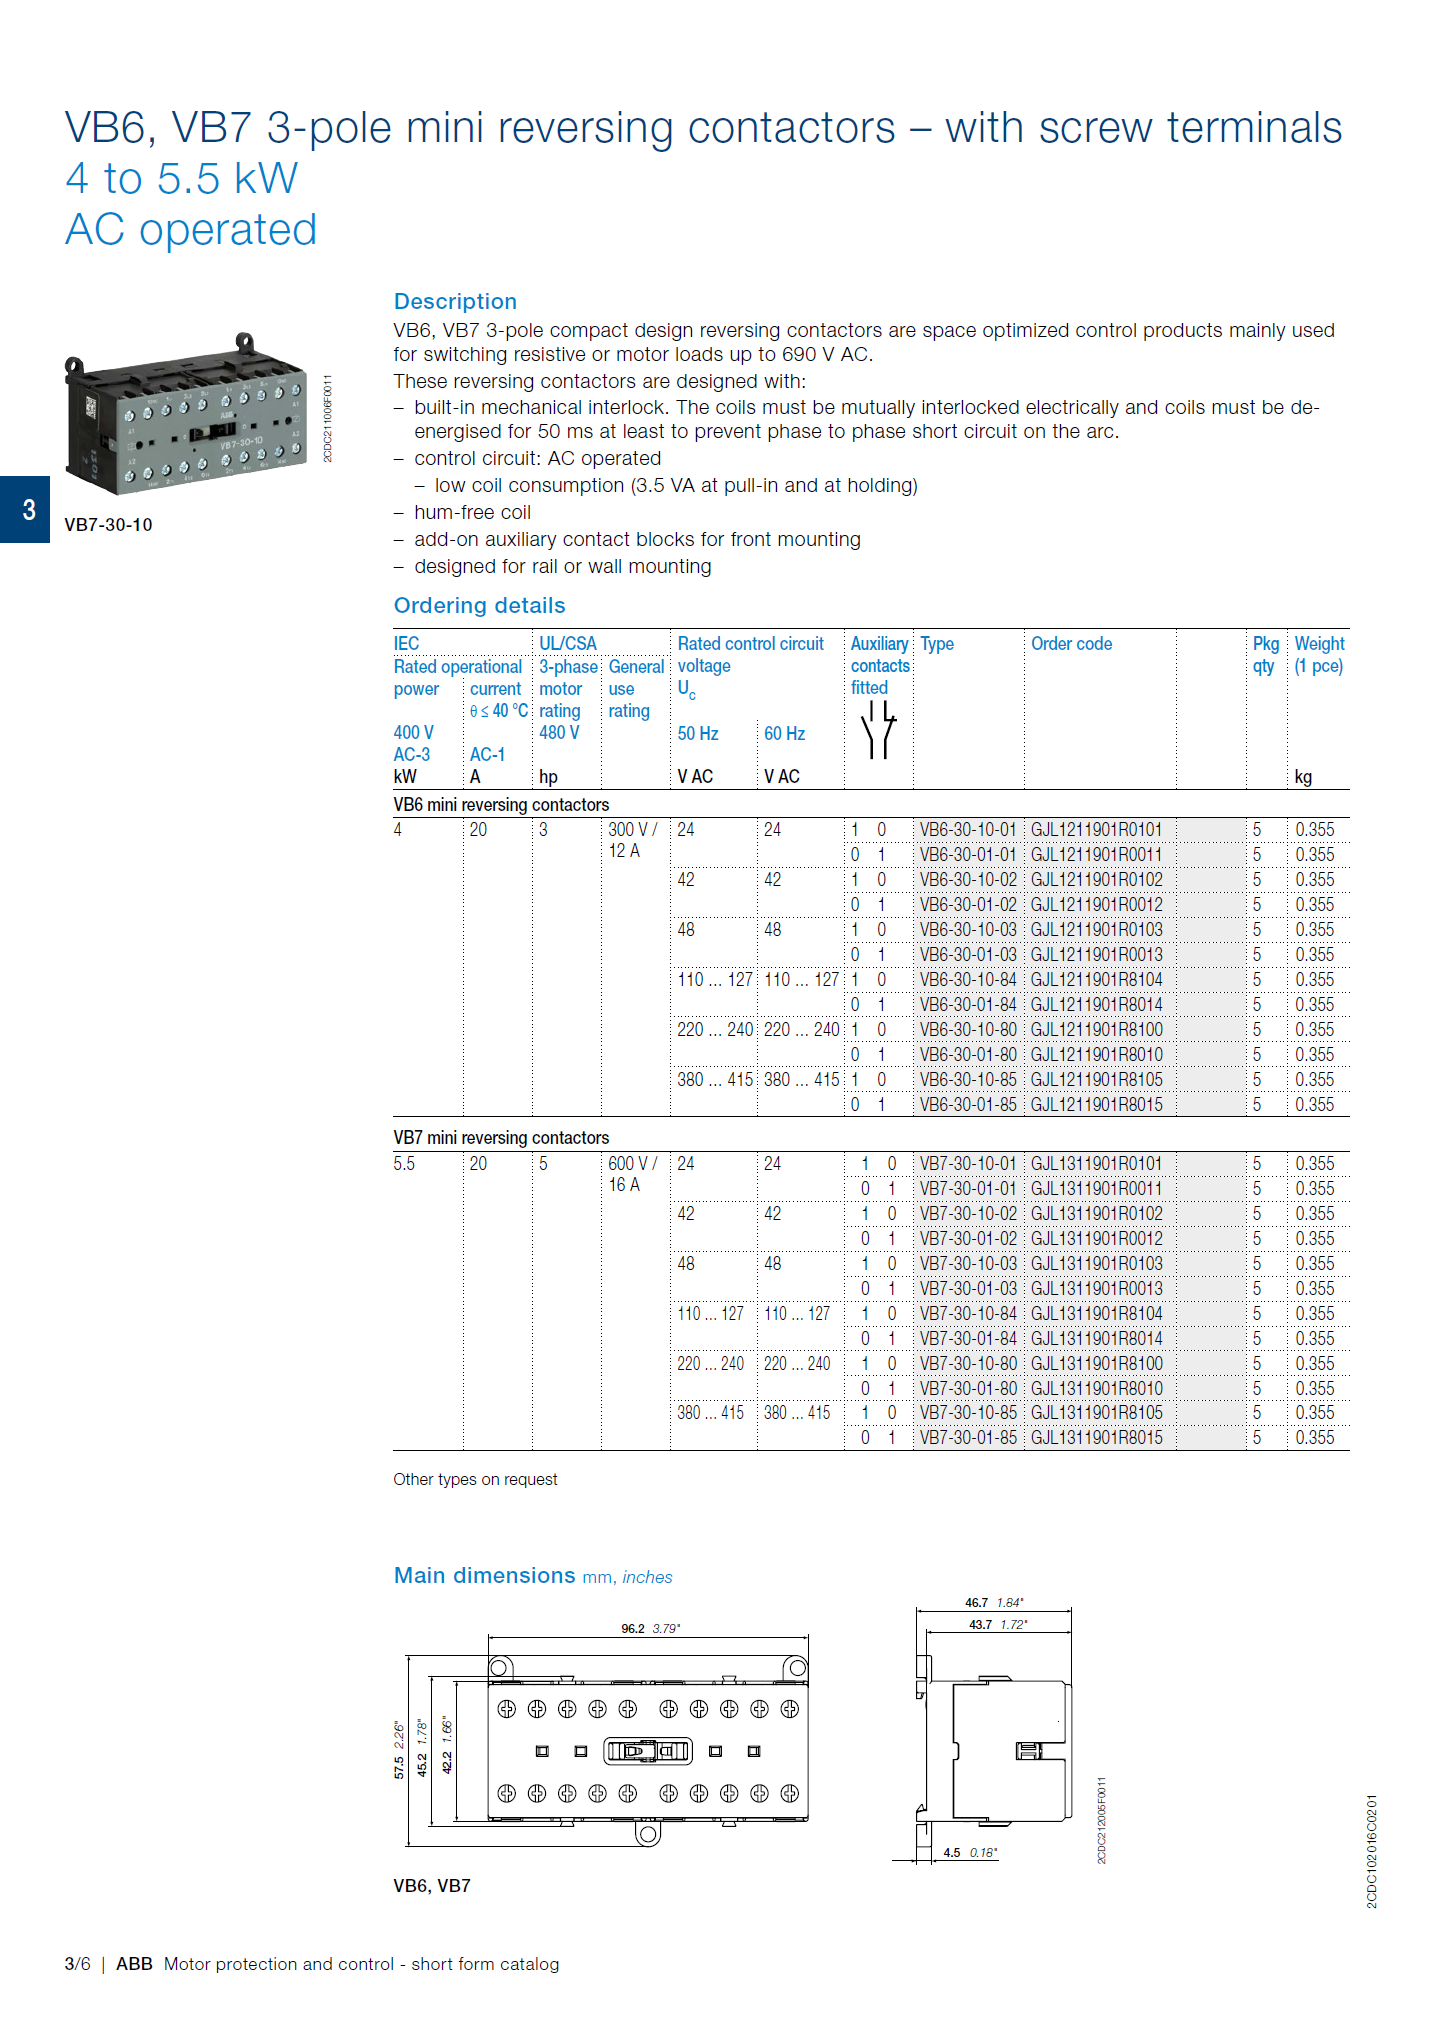 ABB B6, B7 series mini contactors: BC6-30-01-F